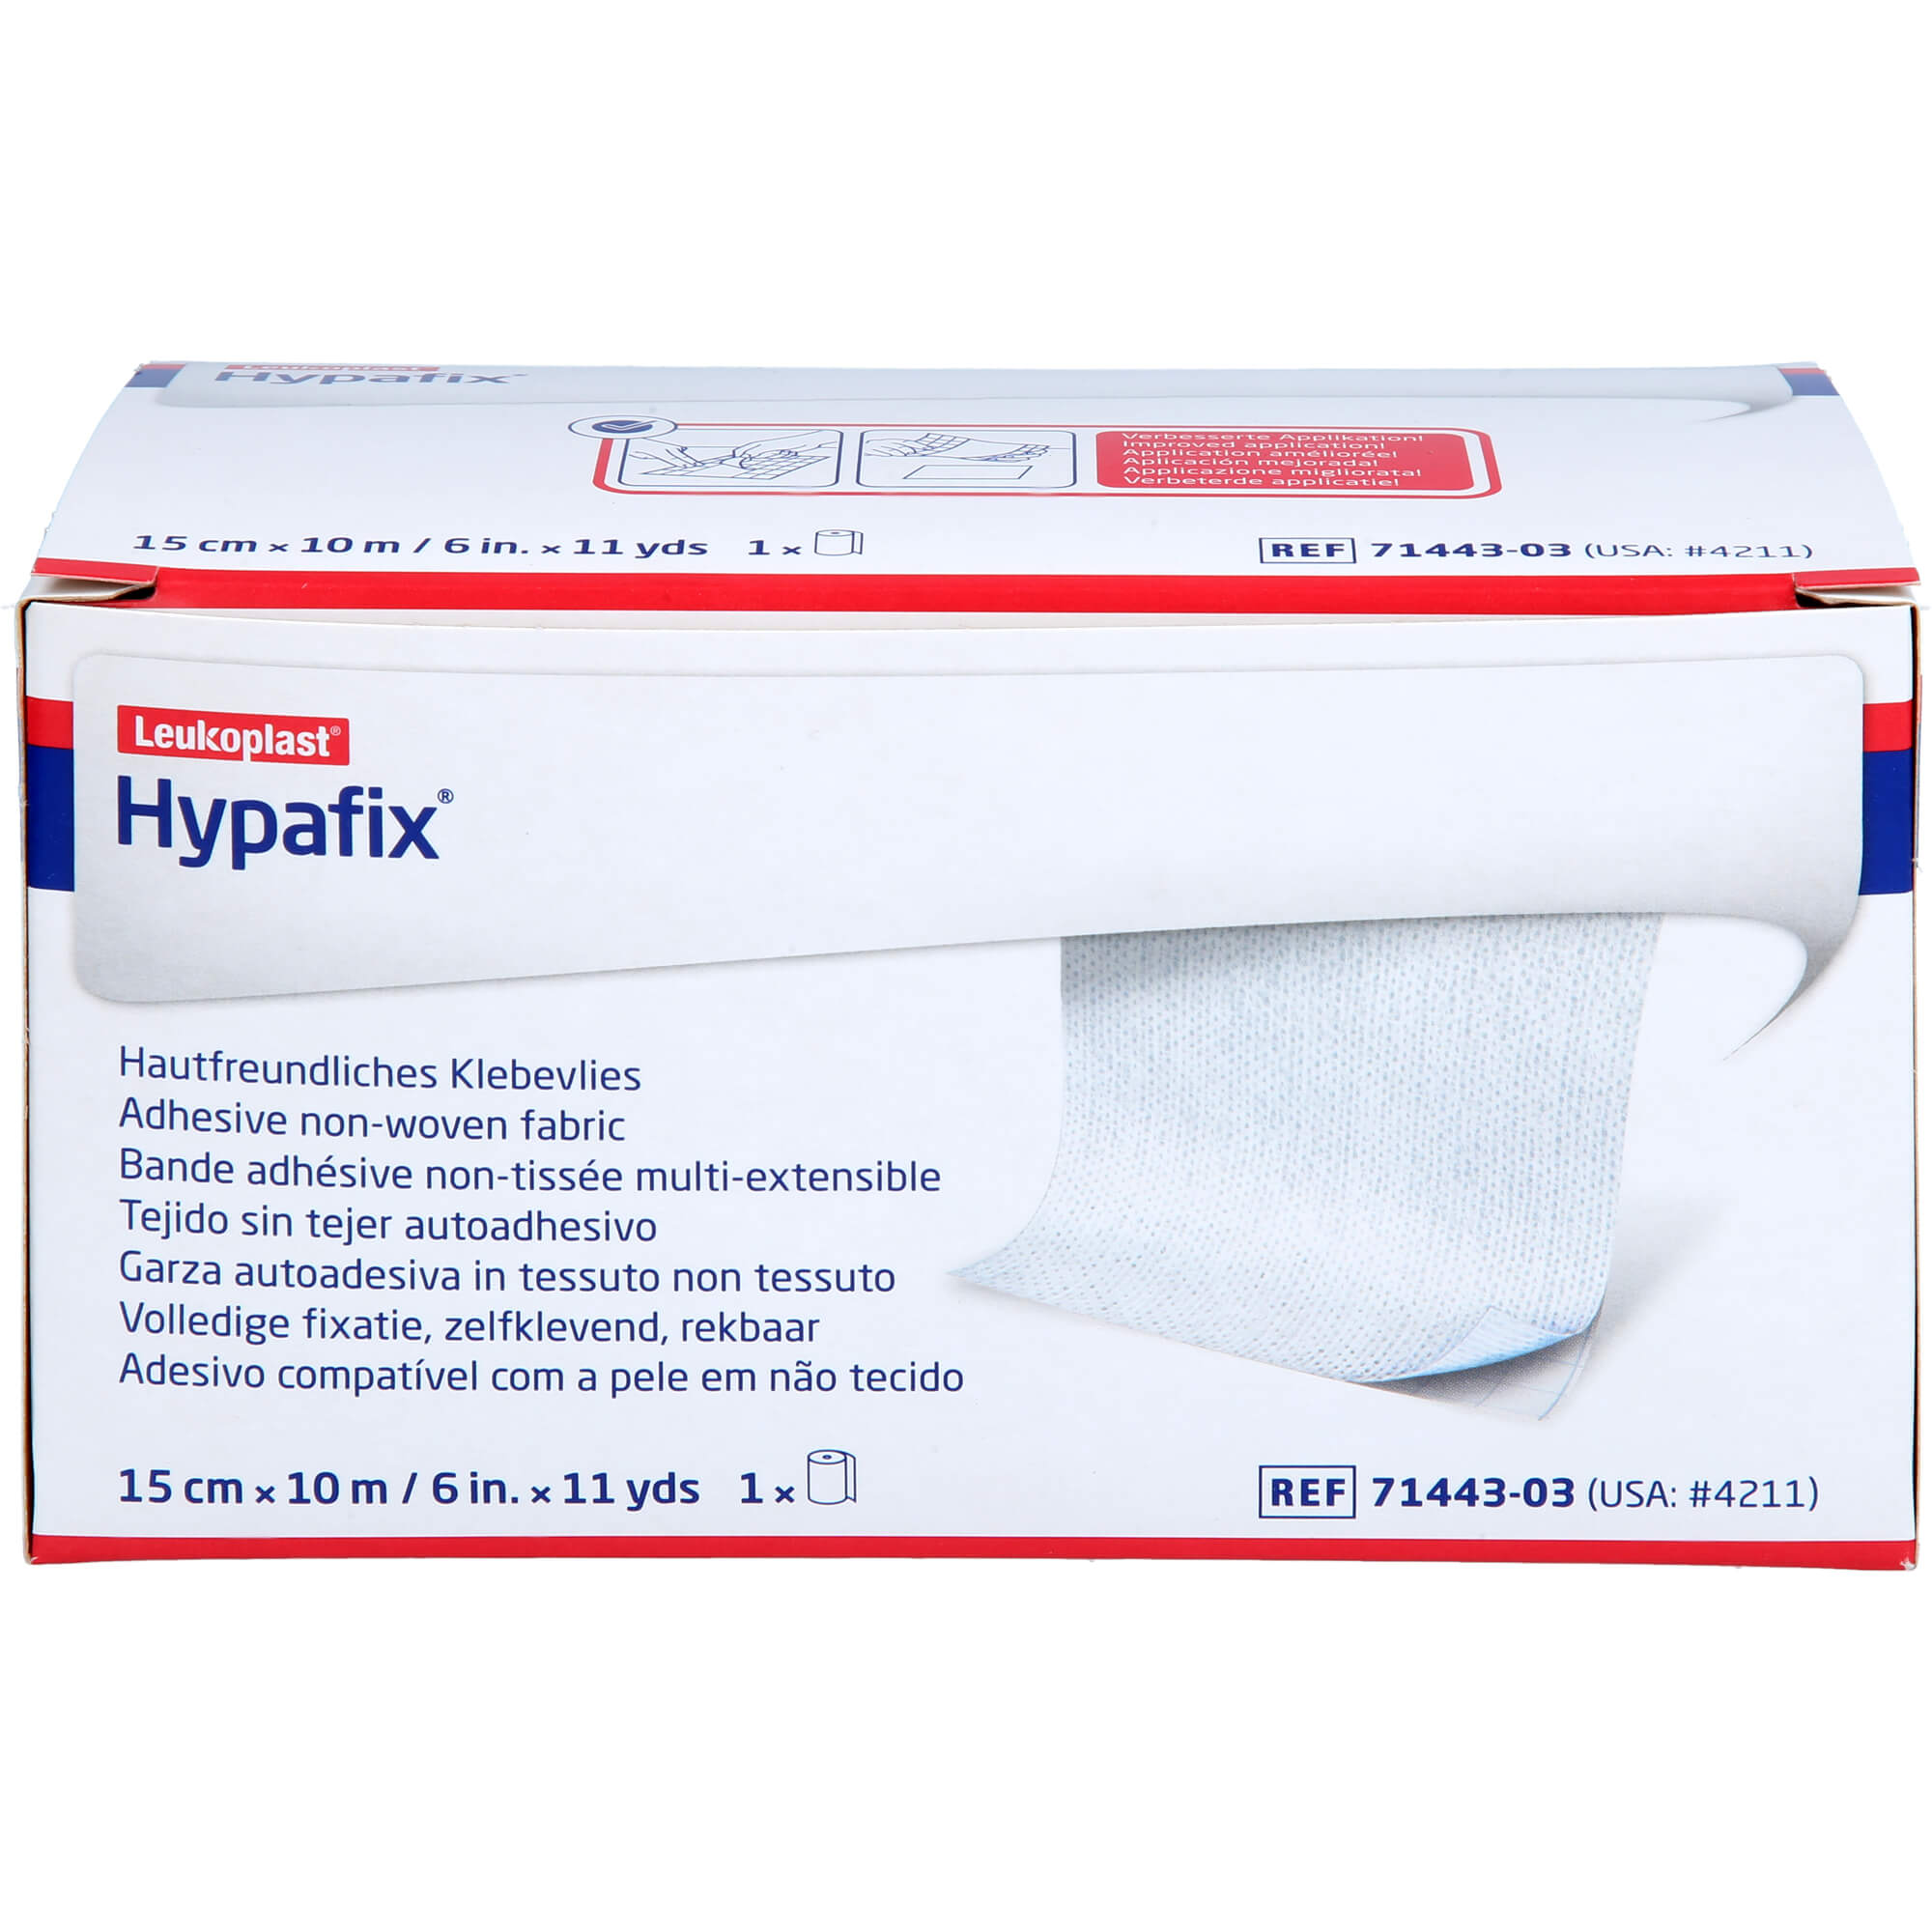 HYPAFIX Klebevlies hypoallergen 15 cmx10 m